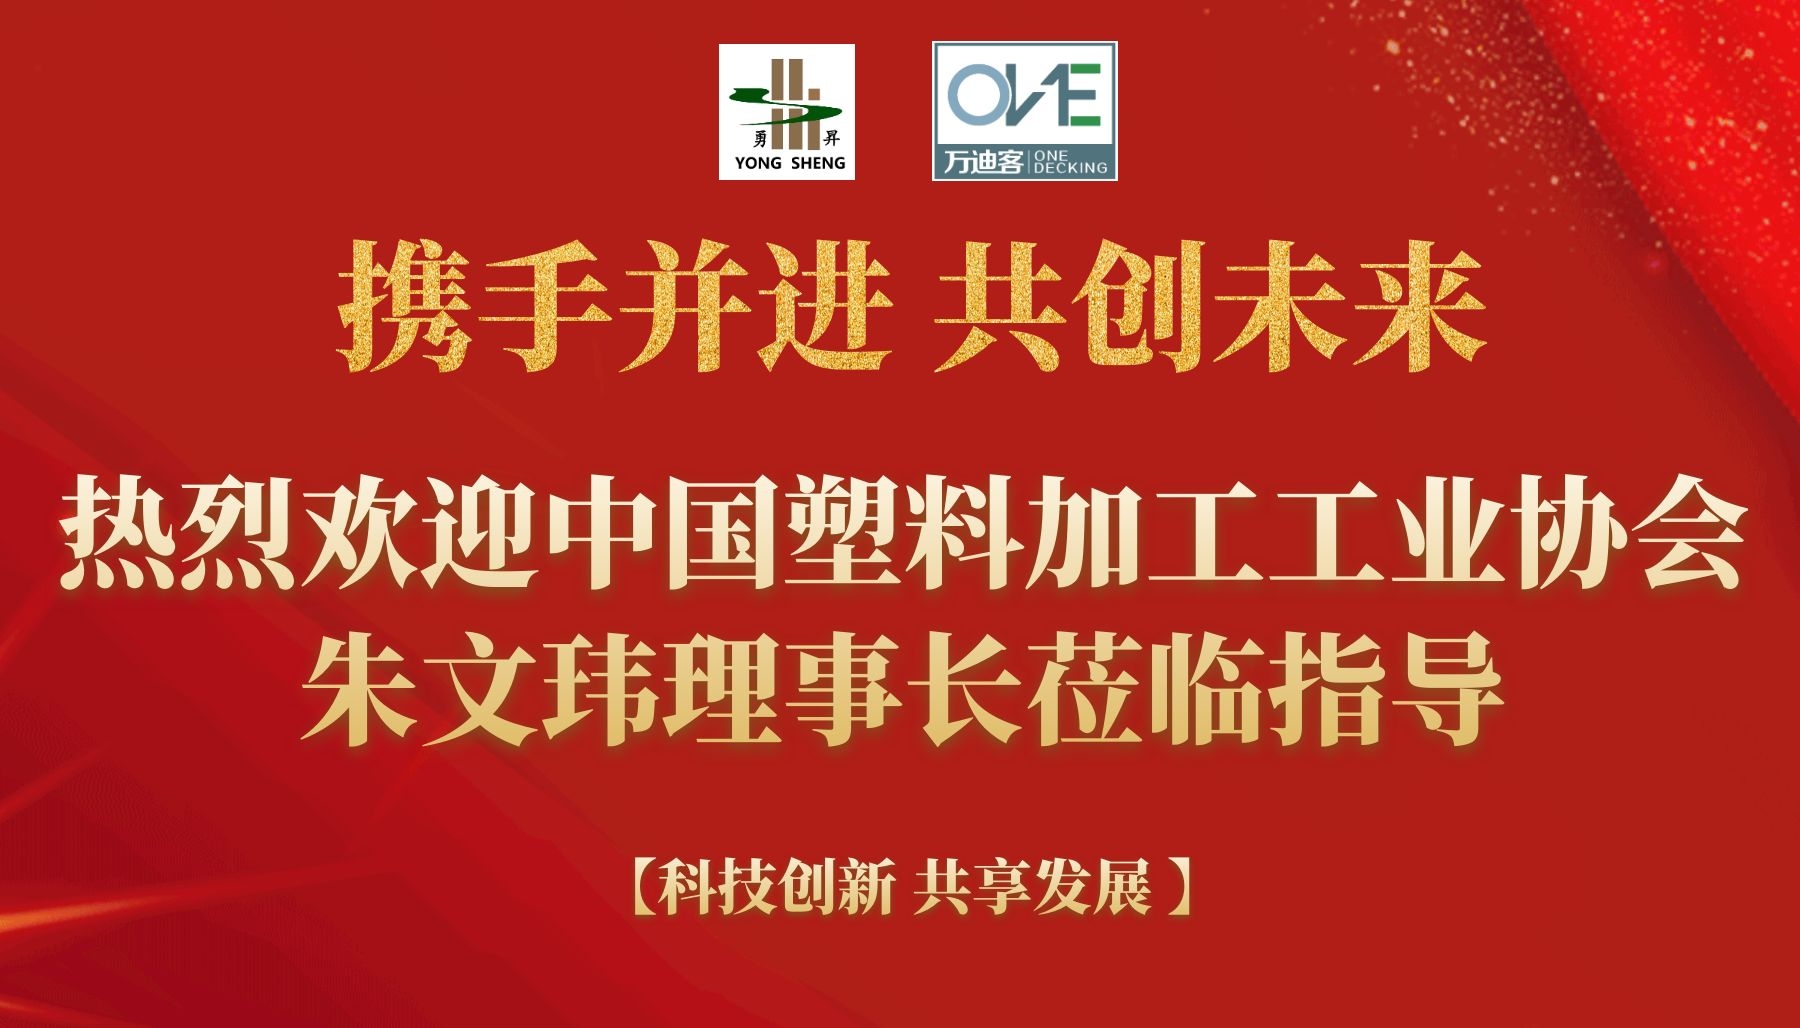 热烈欢迎中国塑料加工工业协会朱文玮理事长莅临指导